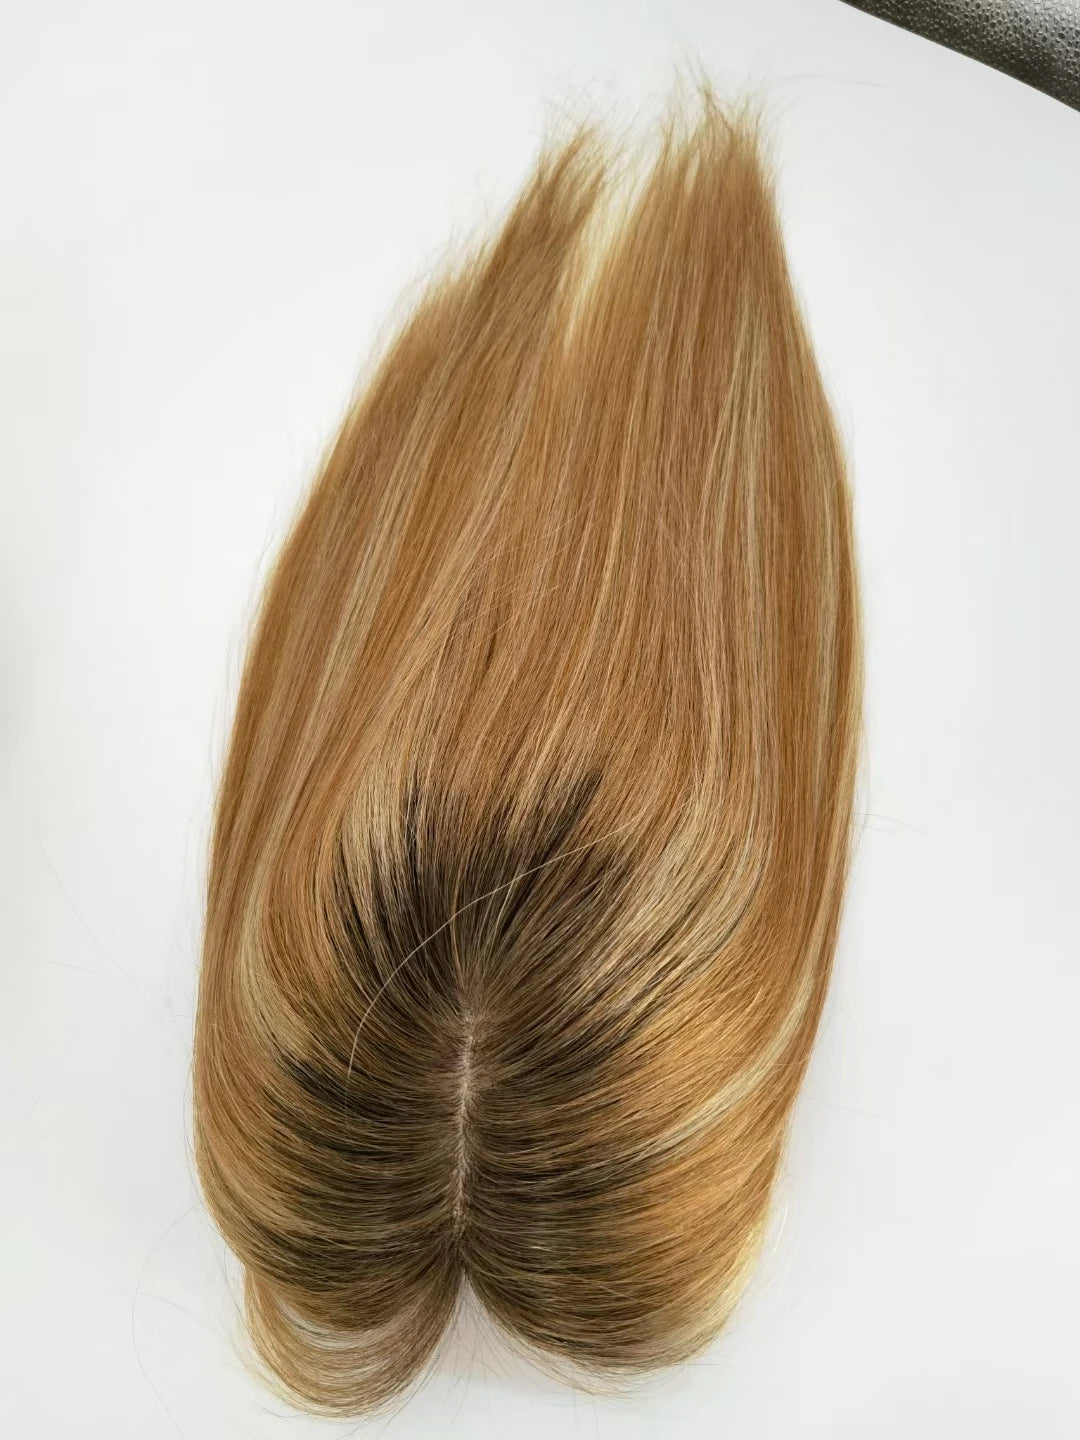 Lace Front Silk Top Topper Blonde 613 Perücke Europäisches Remy Haar Koscher Front Toupet Für Frauen TP31